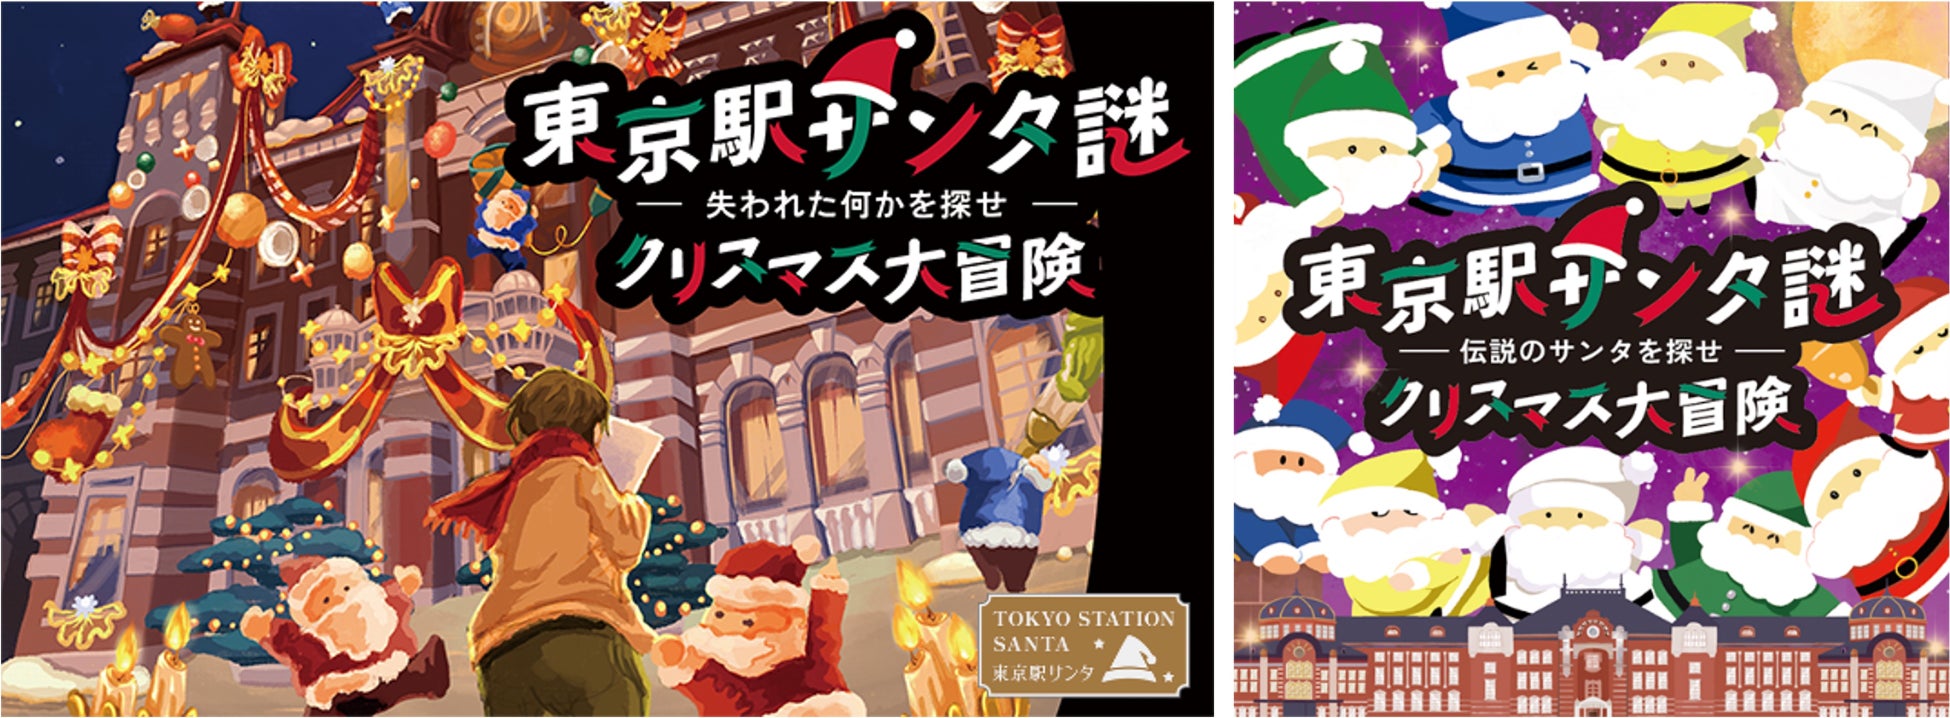 今年の「東京駅サンタ」は“謎解き”と“合唱コンサート”　東京駅初の謎解きイベント『東京駅サンタ謎 クリスマス大冒険 –失われた何かを探せ-』駅開業日を祝う総勢約100名の『クリスマスコンサート』